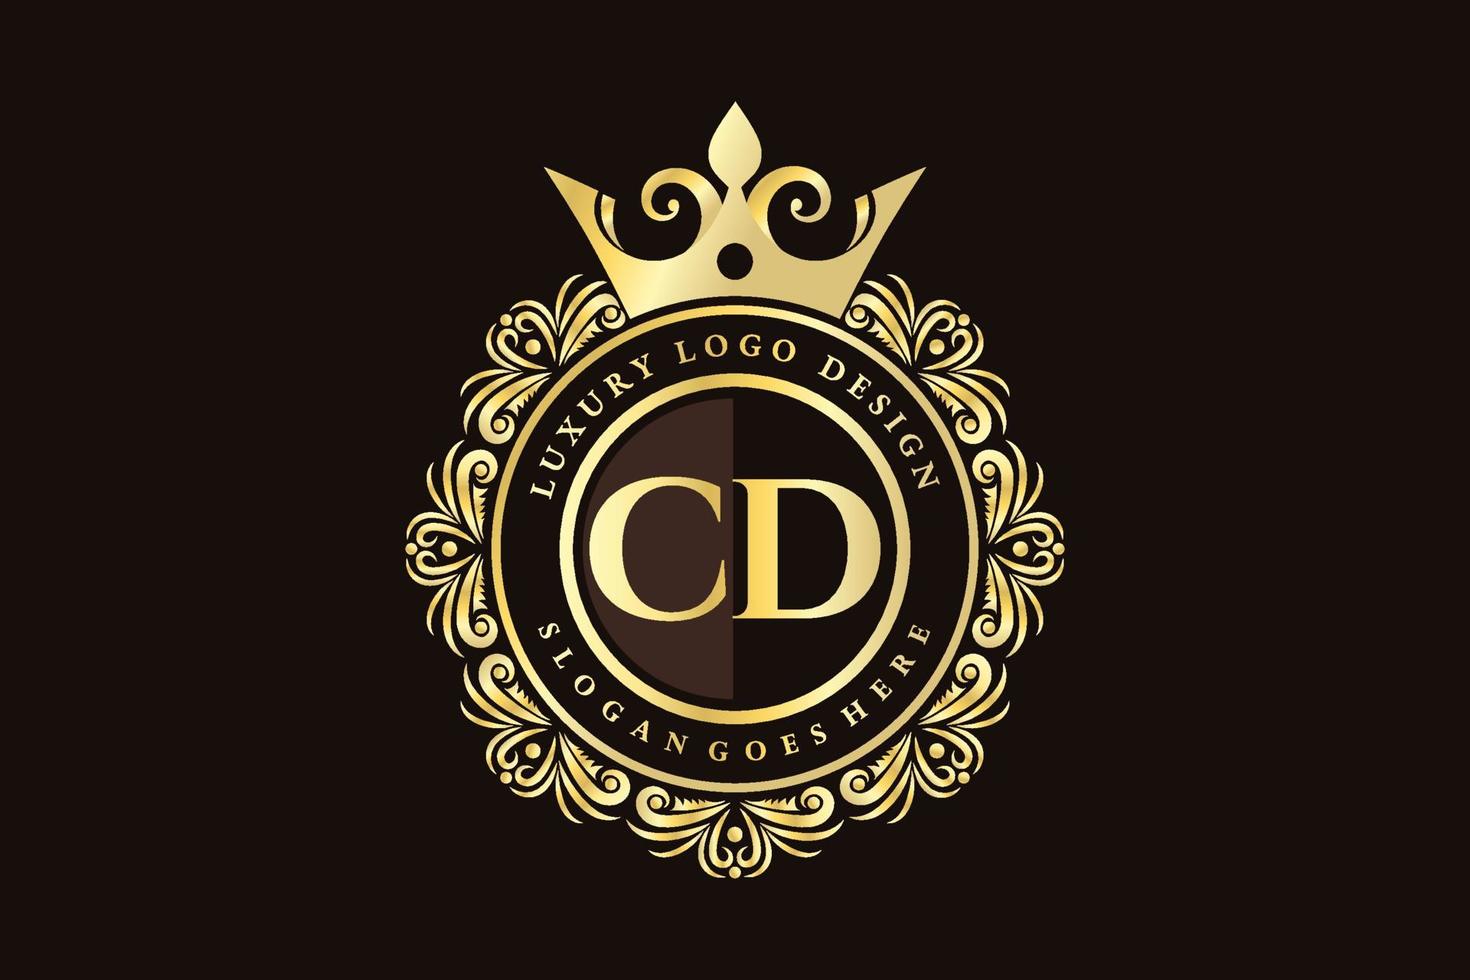 cd letra inicial oro caligráfico femenino floral dibujado a mano monograma heráldico antiguo estilo vintage lujo diseño de logotipo vector premium